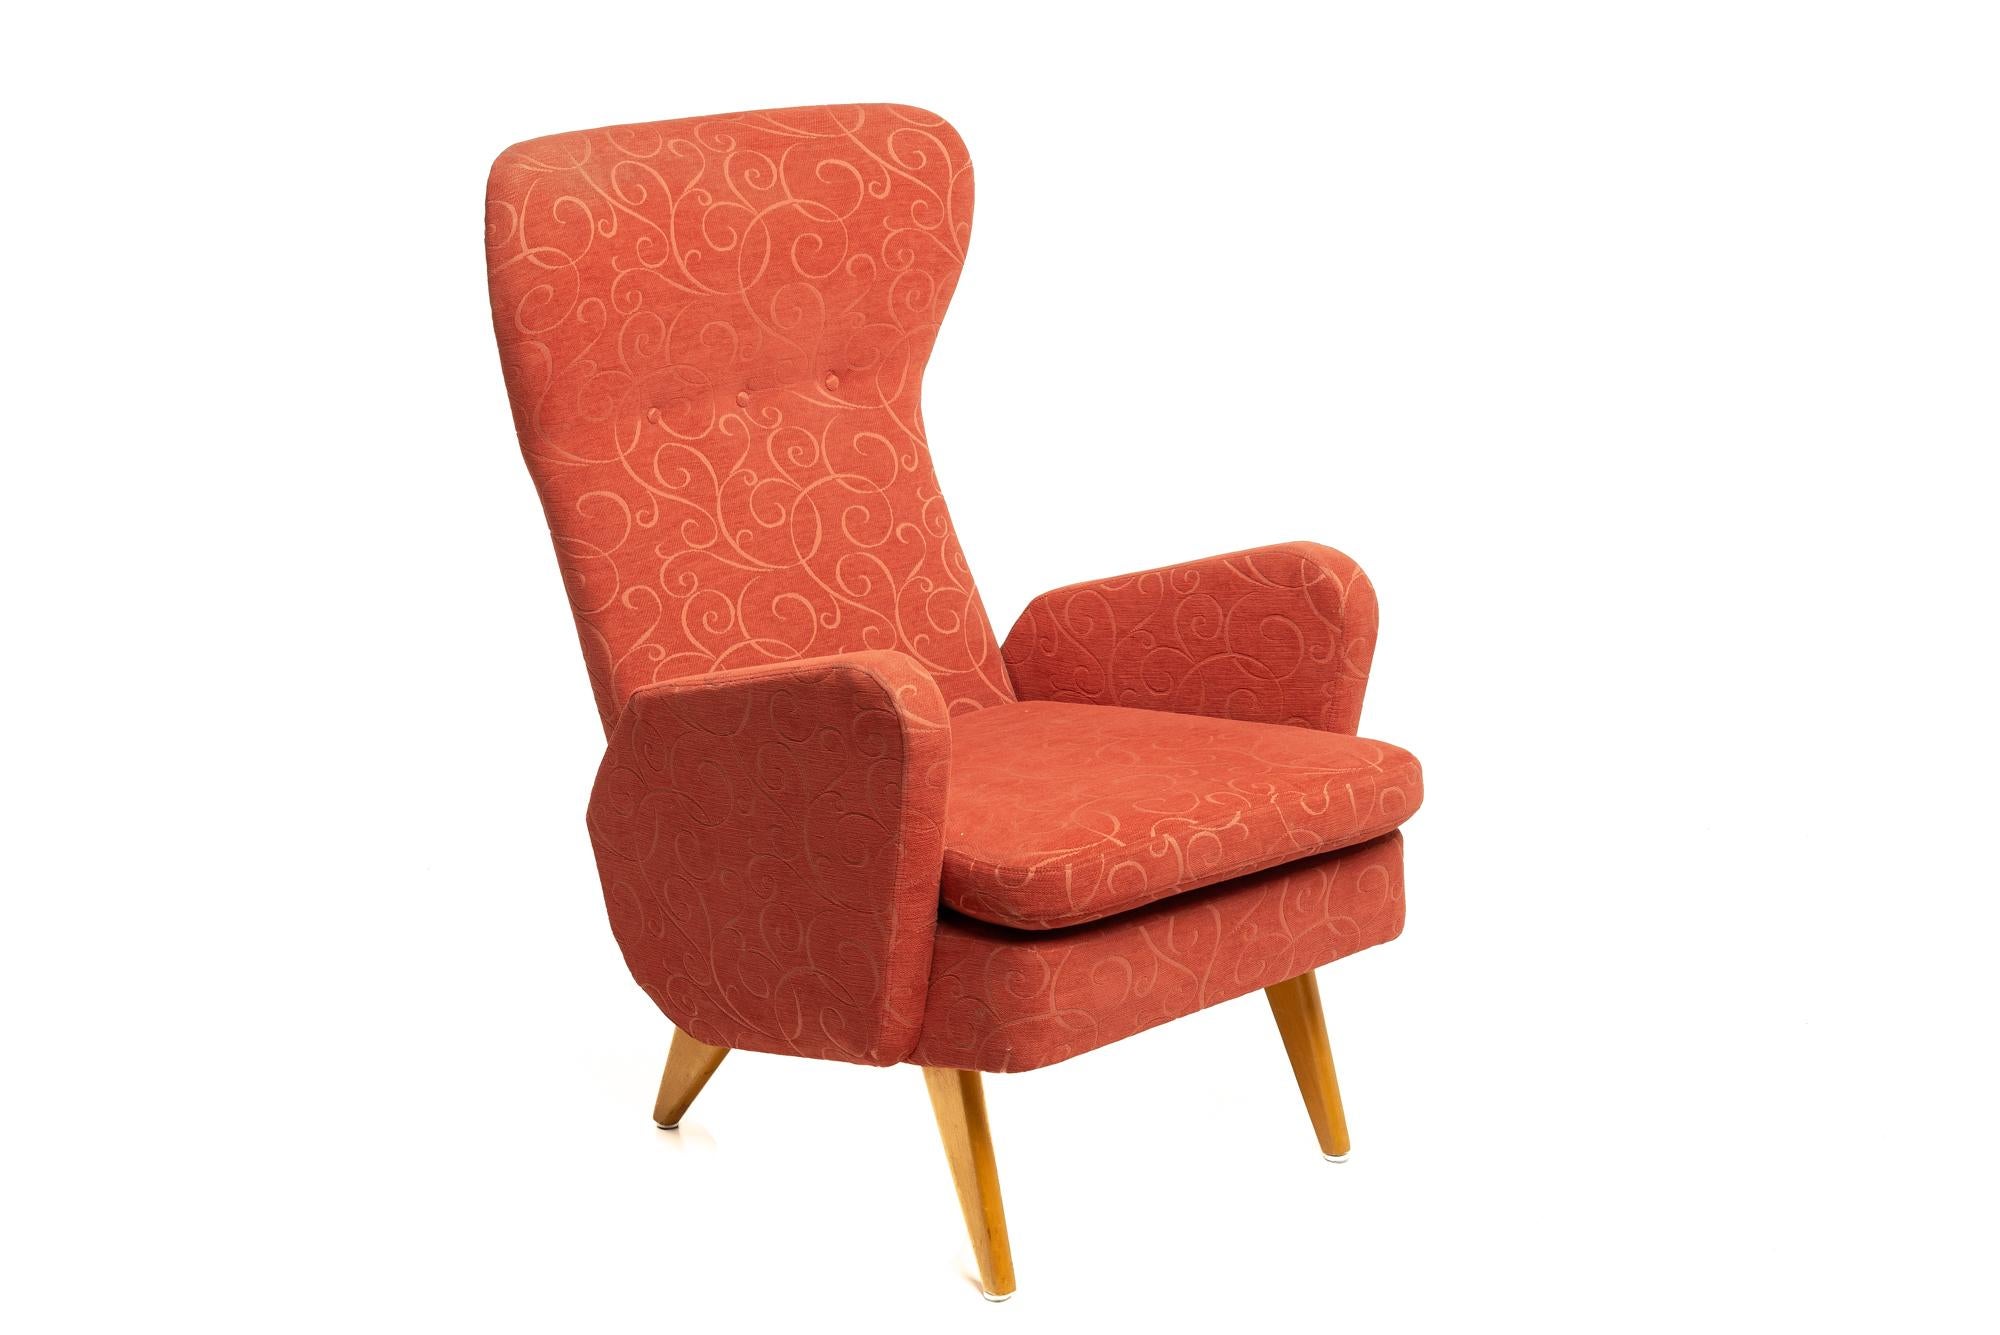 Ce fauteuil de Carl Gustav Hiort d'Ornäs est un très bon exemple de ce que l'on peut attendre d'un fauteuil.
Design/One des années 1950, design intemporel, chaise extrêmement confortable.
Très bon état, pas de travaux à prévoir.